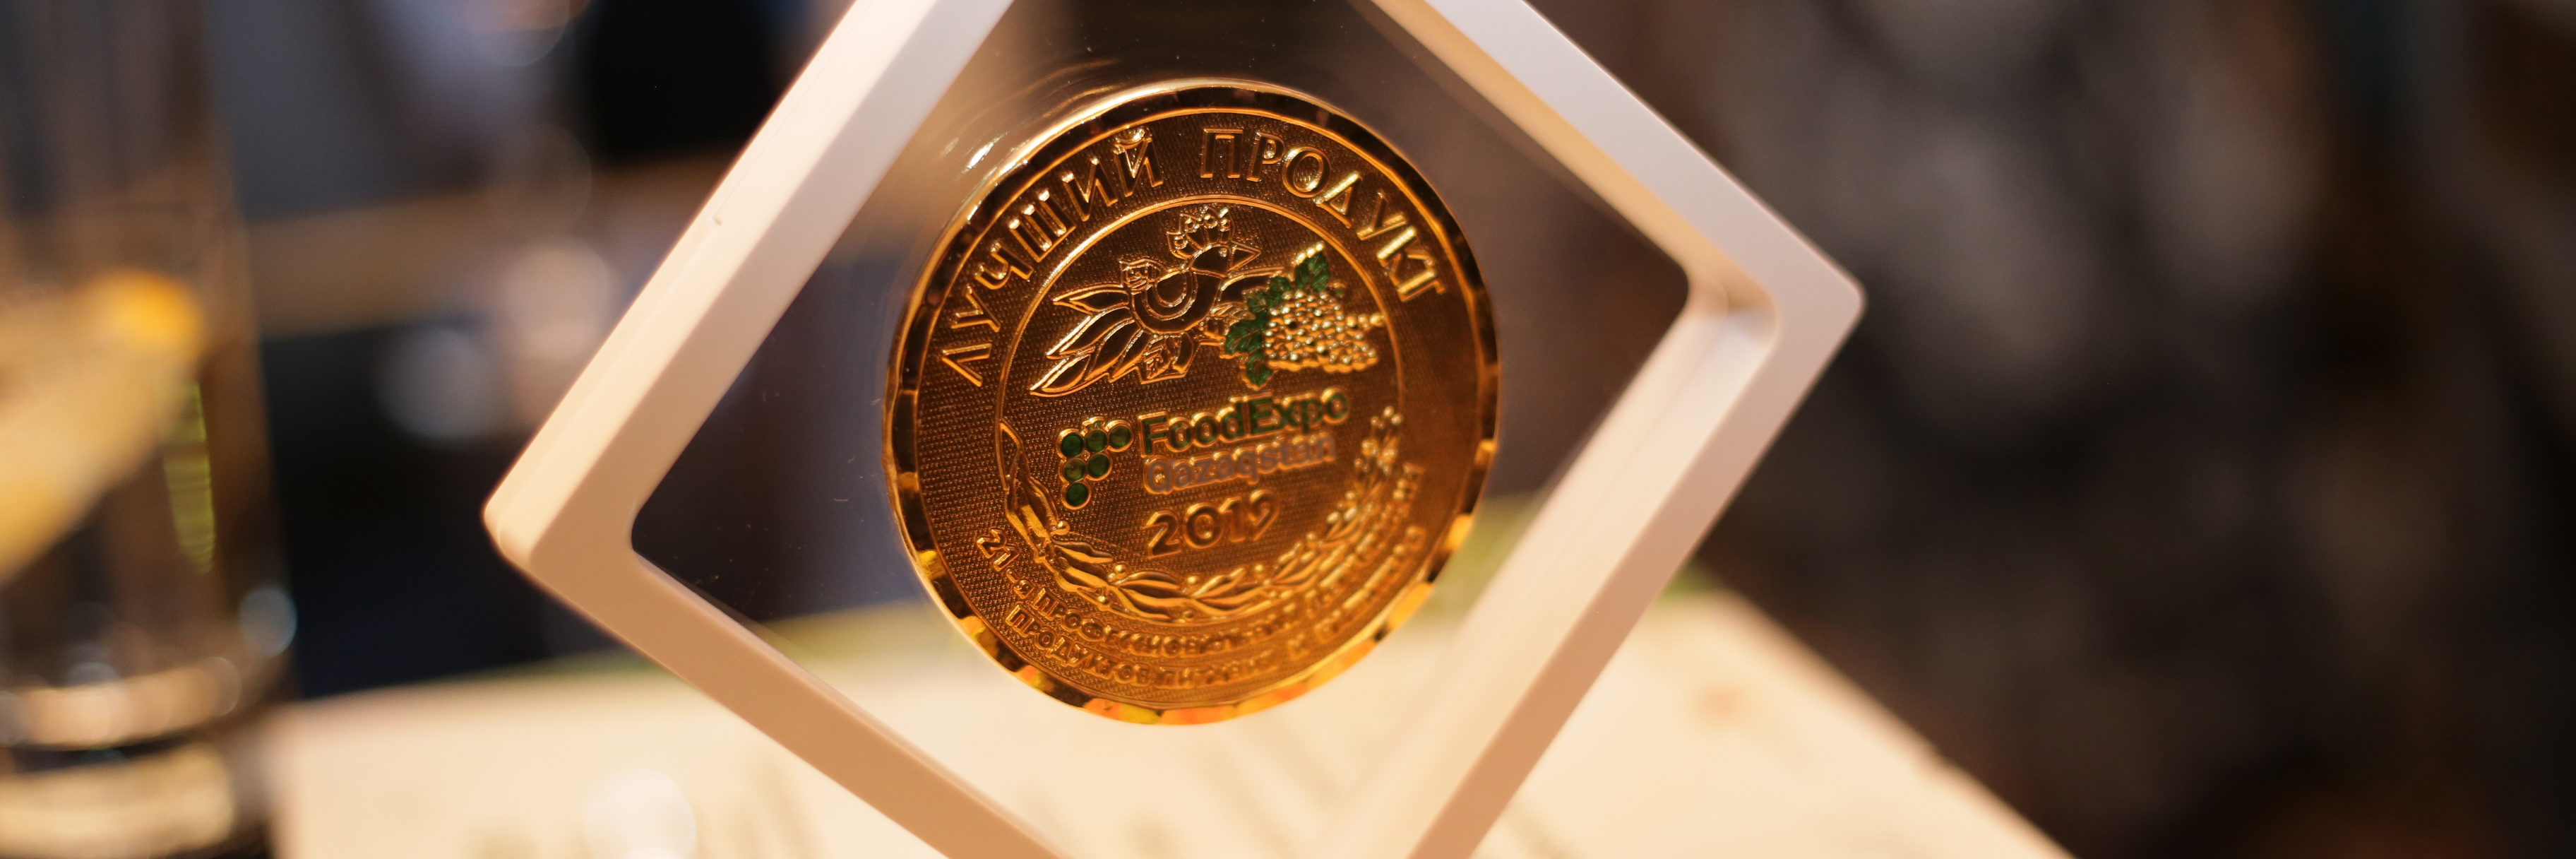 Компания «Шин-Лайн» стала победителем конкурса «Лучший продукт FoodExpo Qazaqstan 2019»: в категории «Мороженое»